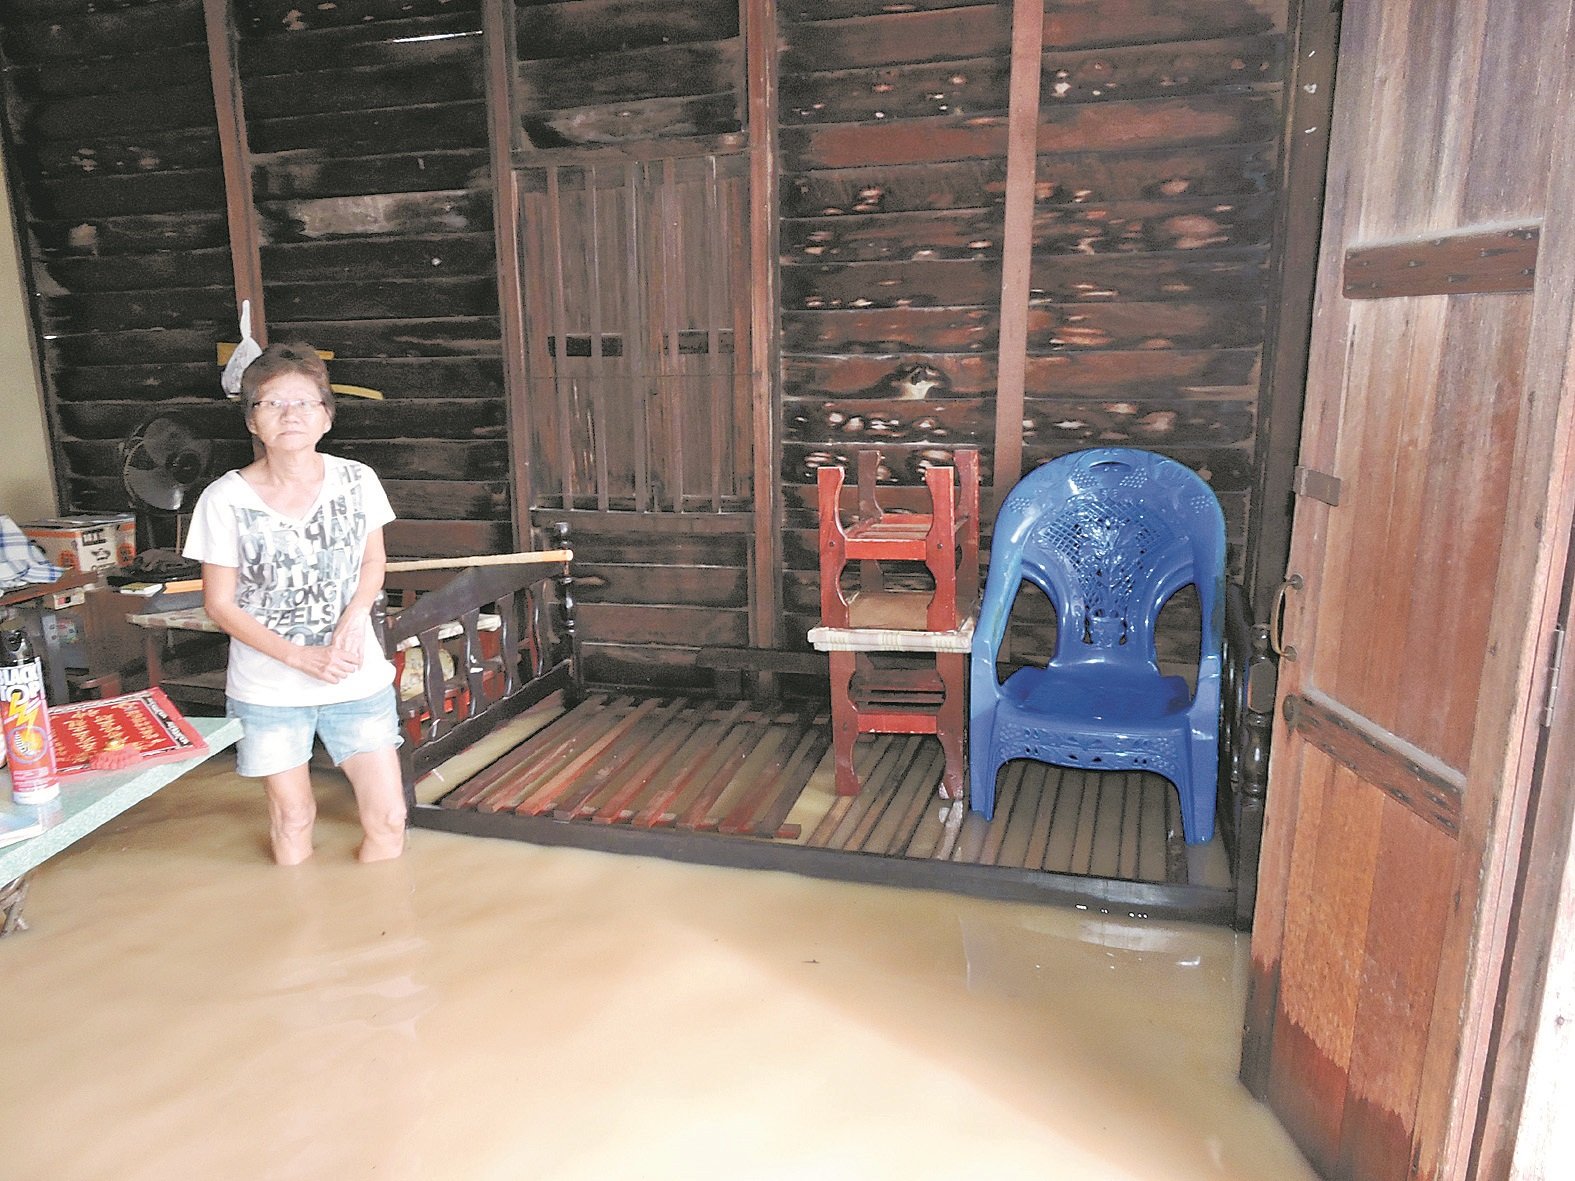 由于水位逼近陈淑英的床位，薛玉珍唯有联络消拯员协助送母亲至妹妹的住家。